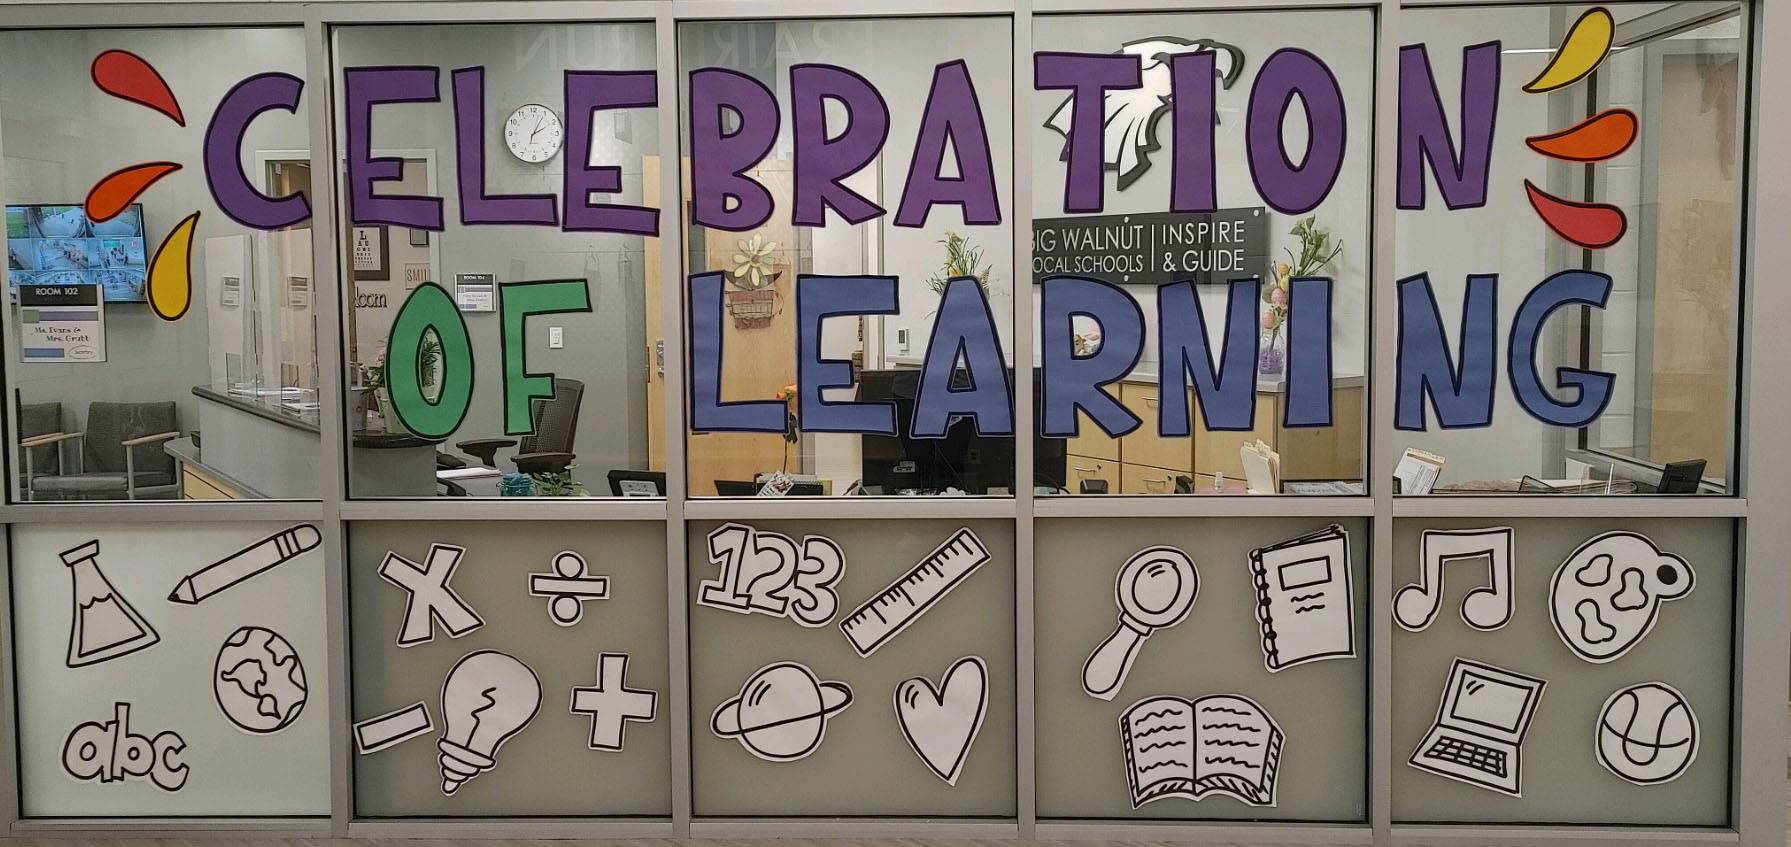 Celebration of Learning